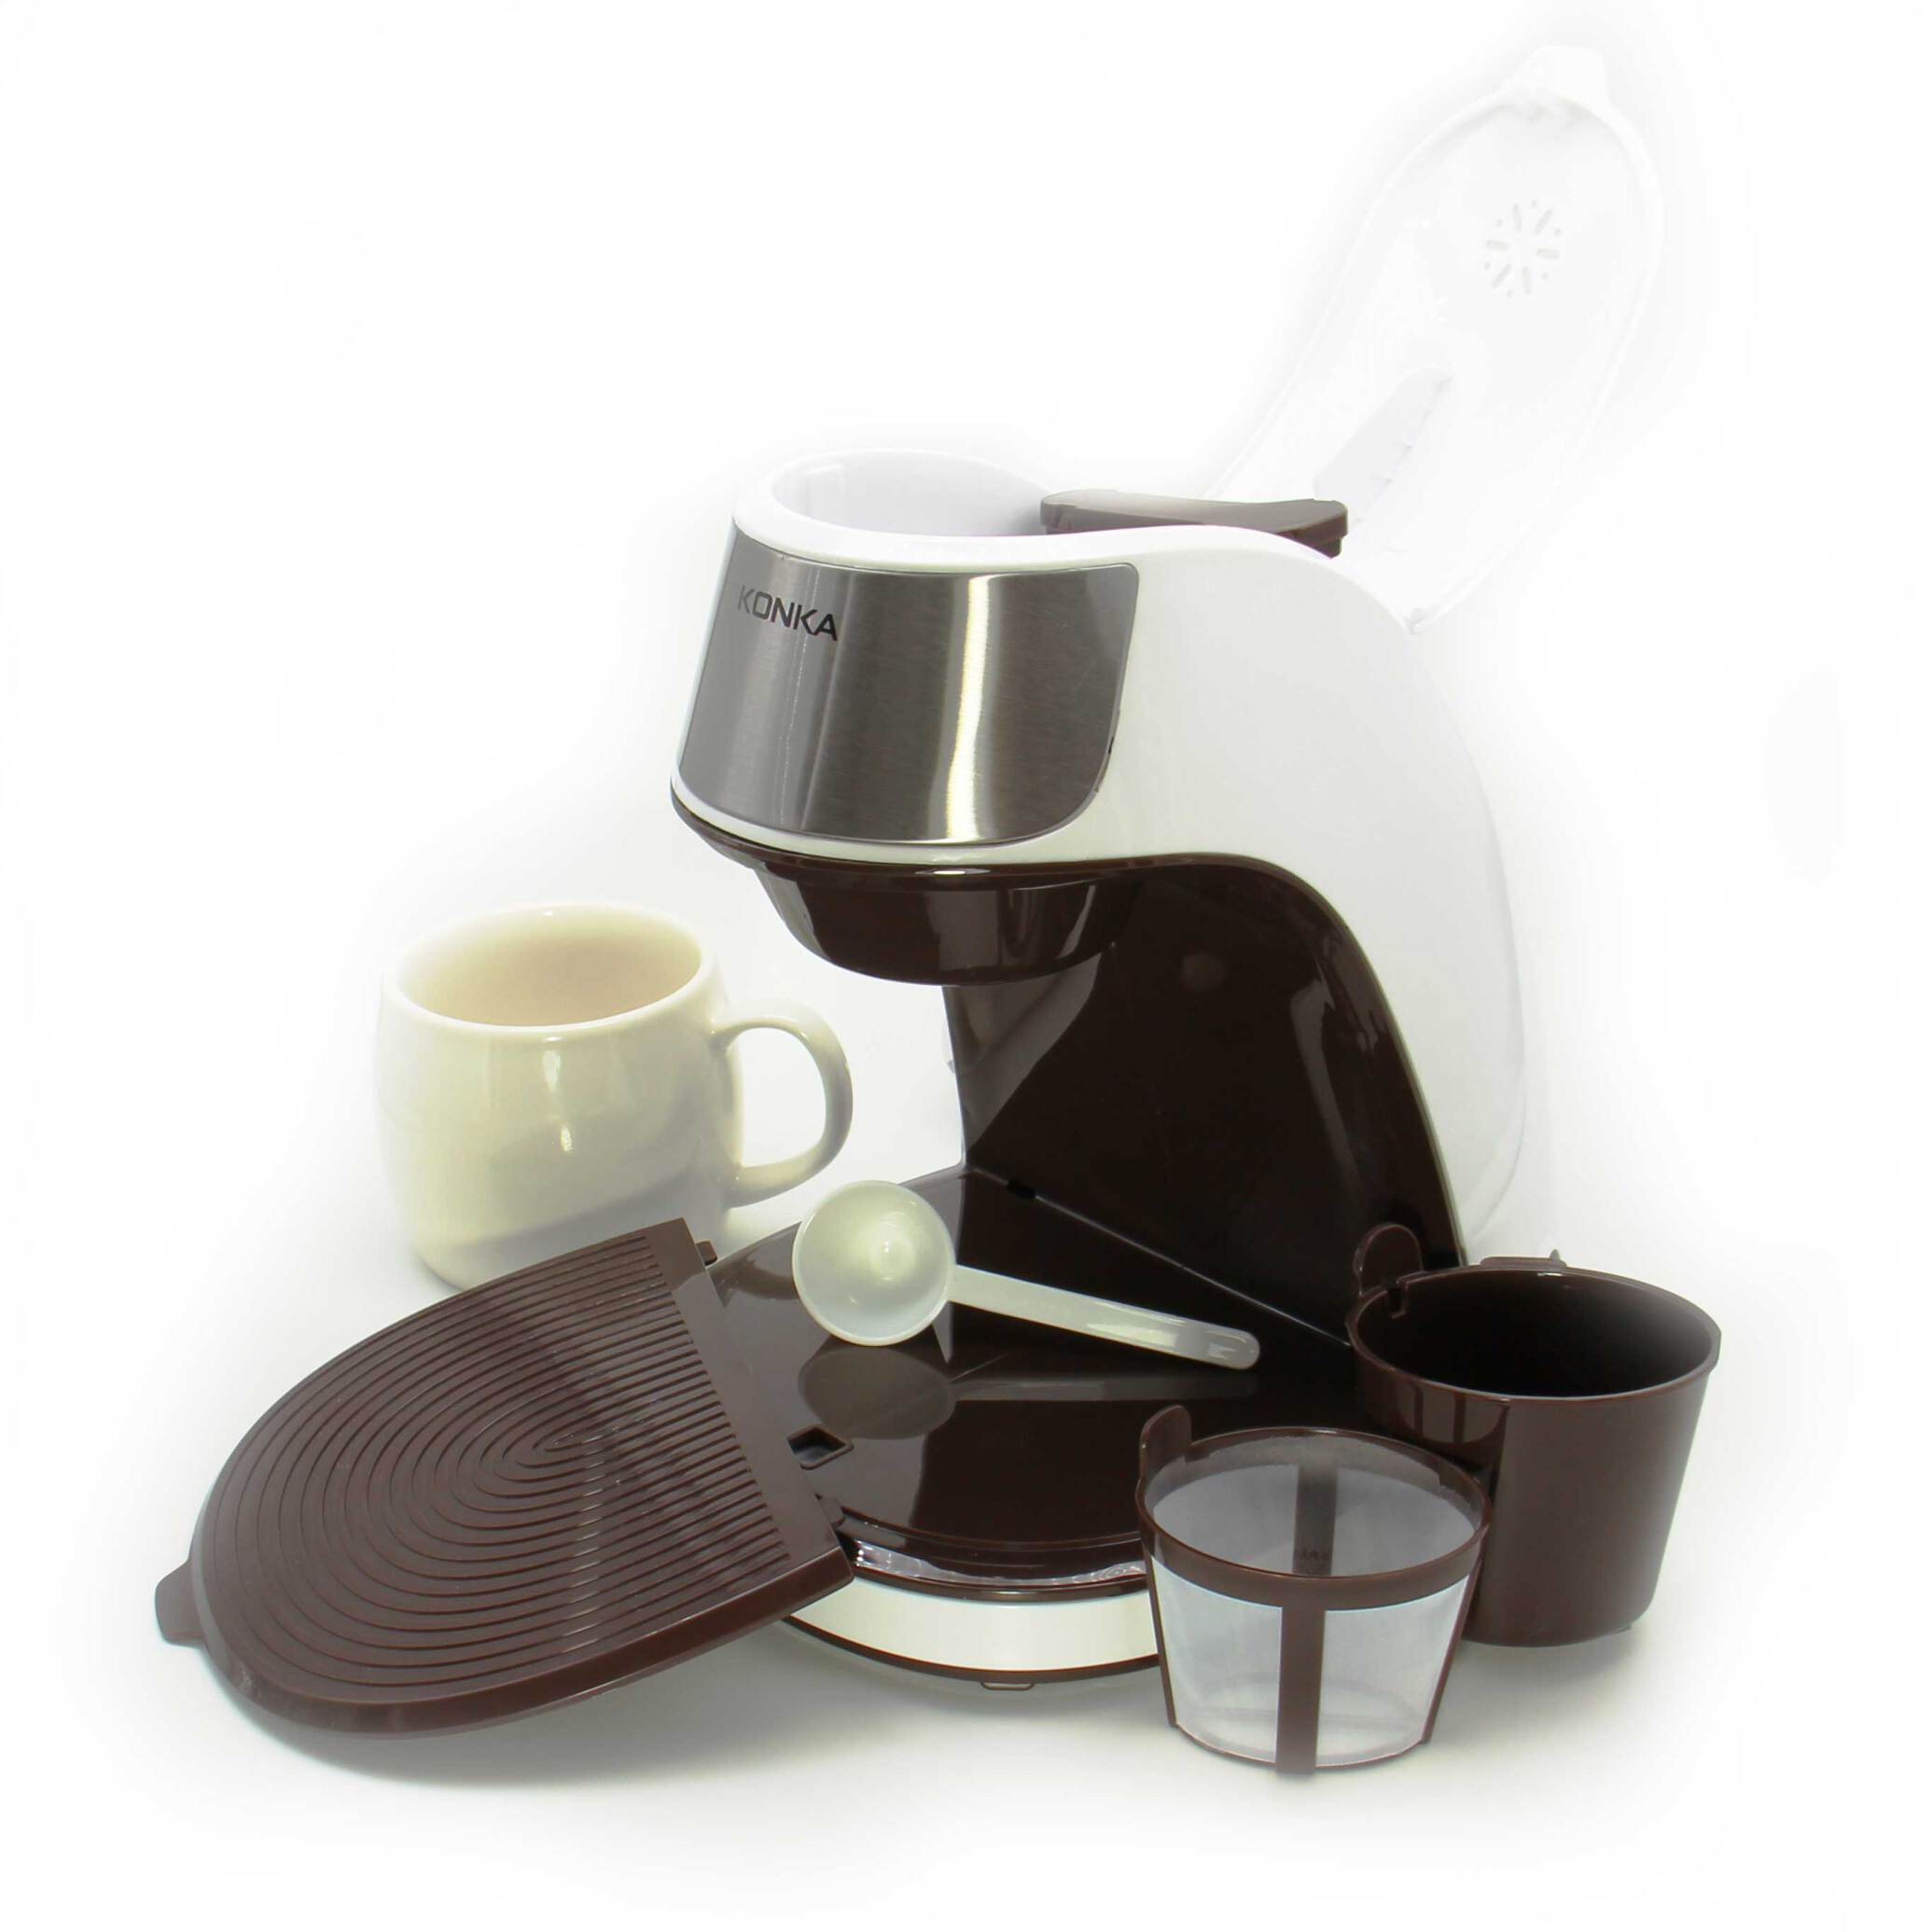  دستگاه قهوه ساز konka + به همراه ماگ | بلک کافی | فروشگاه قهوه و دستگاه قهوه | دستگاه قهوه ساز کوچک | قهوه ساز خانگی 